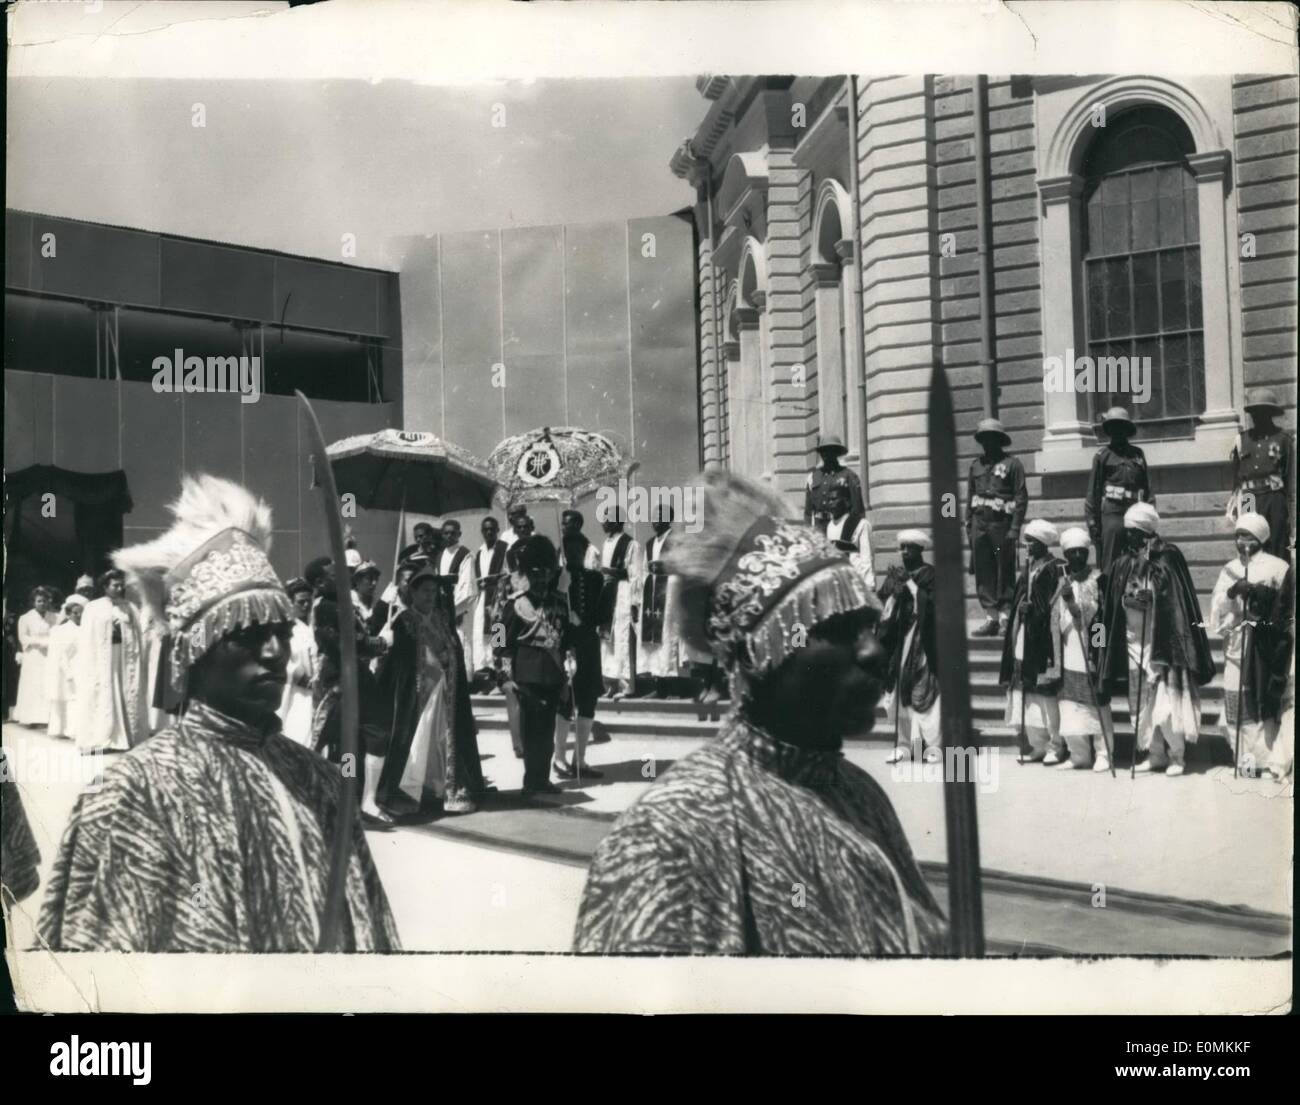 Nov. 11, 1955 - L'imperatore Haile Selassie celebra il suo anniversario dell incoronazione di Addis Abeba: l'imperatore Haile Selassie di Ethopia ha celebrato il 25th. anniversario della sua incoronazione la scorsa settimana - con una cerimonia che si terrà a San Giorgio la cattedrale e uno stato in processione per le strade della capitale. Lo stato carrello è stato scortato da una guardia del corpo del piede che indossa rosso e grigio uniformi - e lion mane copricapo. Mostra fotografica di ombrelloni sono stati chiamati per come l'imperatore e l'Imperatrice a piedi in processione durante le celebrazioni ad Addis Abeba. Foto Stock